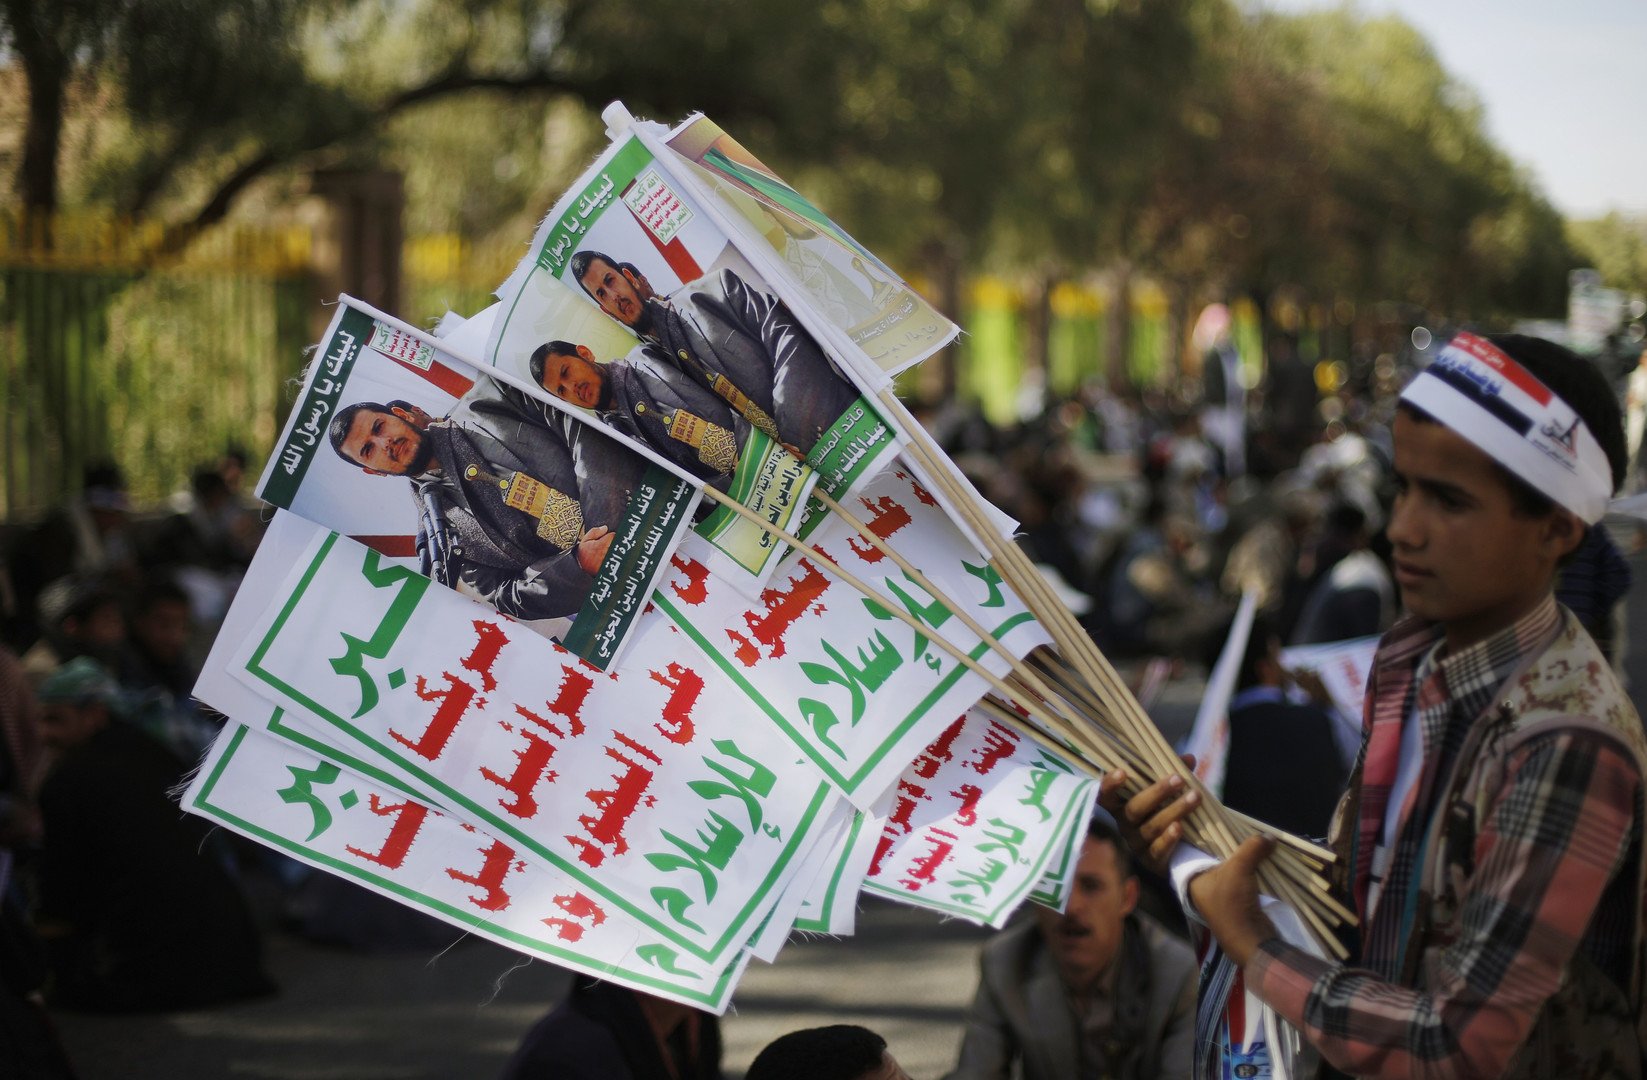 الحوثيون يهددون بالاستيلاء على السلطة في اليمن